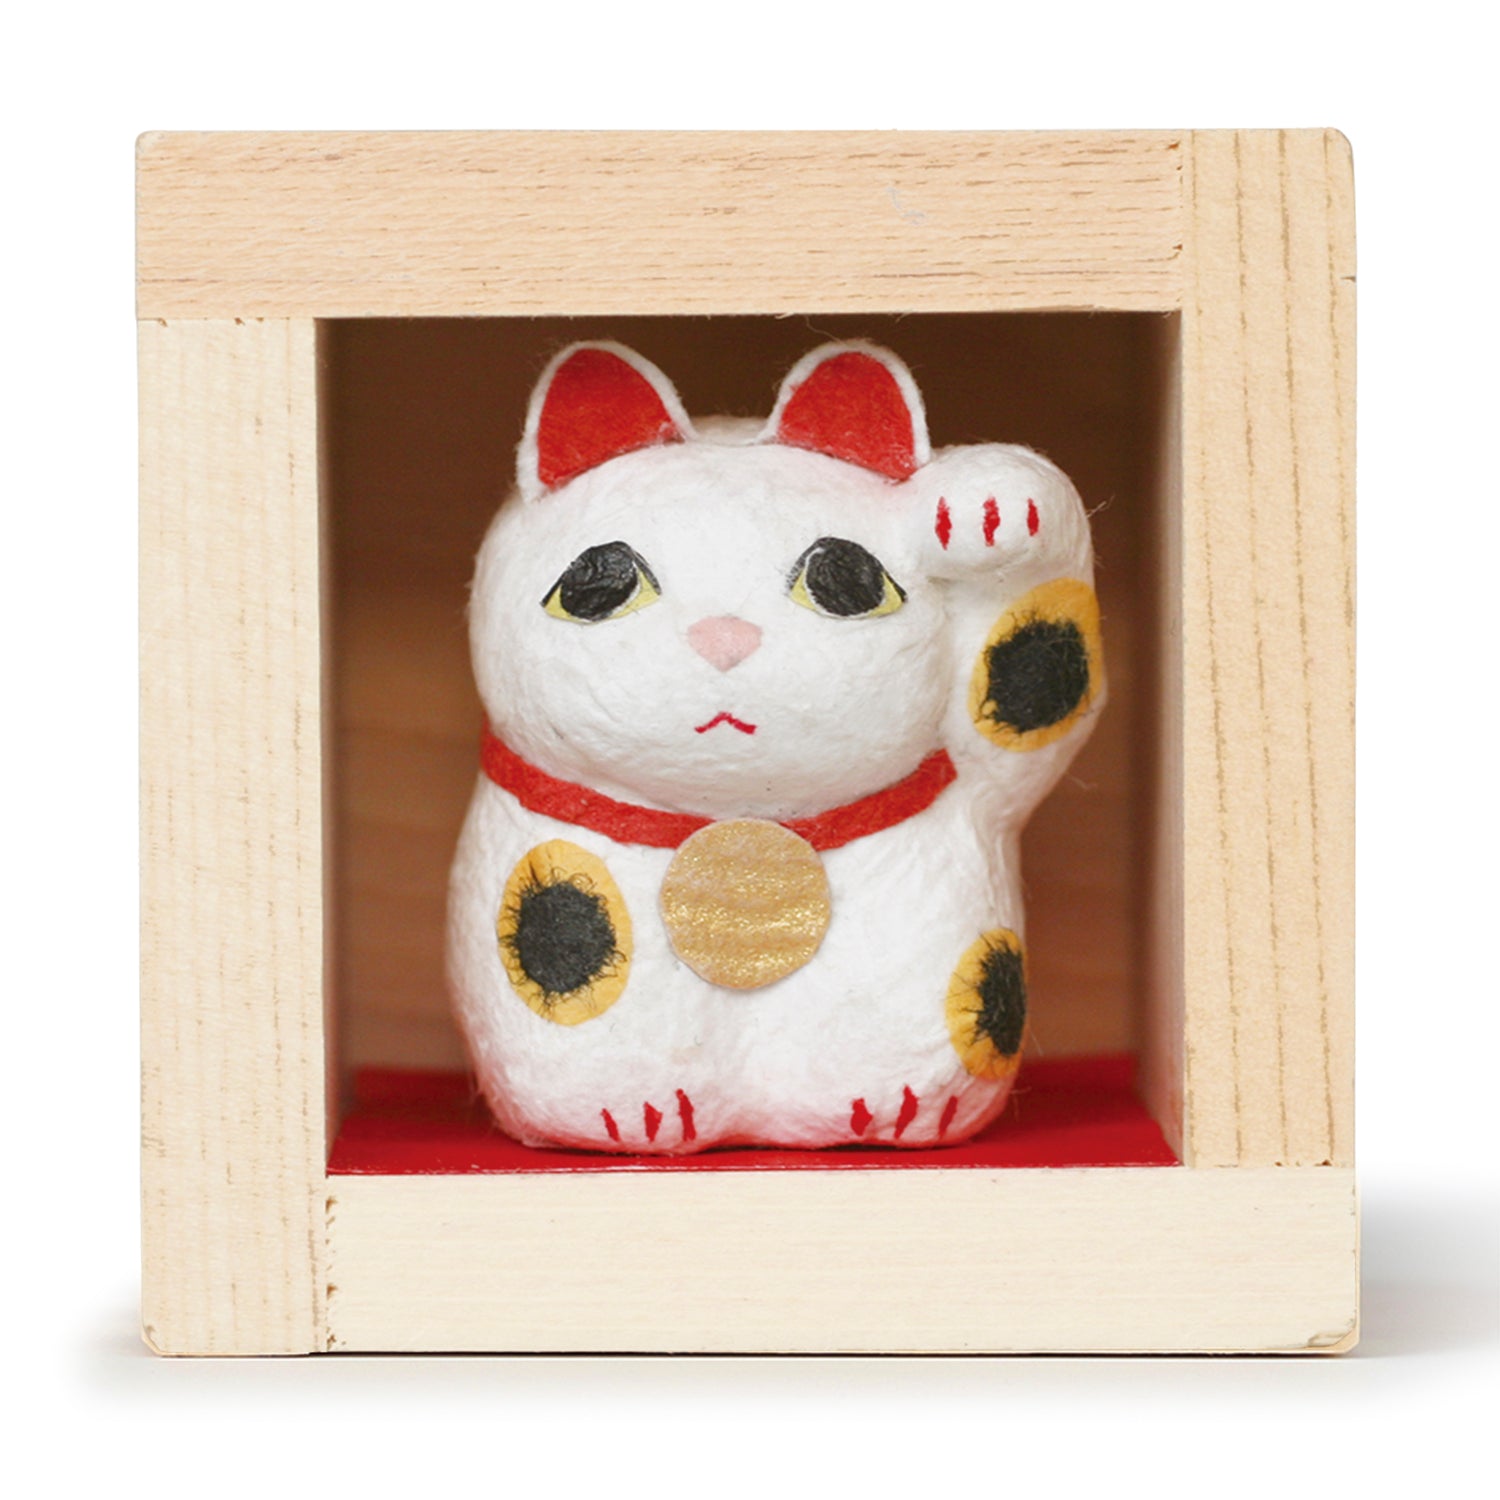 素敵でユニークな 招福 三福豆人形 猫 めでたい柄がたくさん詰まった招き猫がにんまり ホッコリ福を招きます  